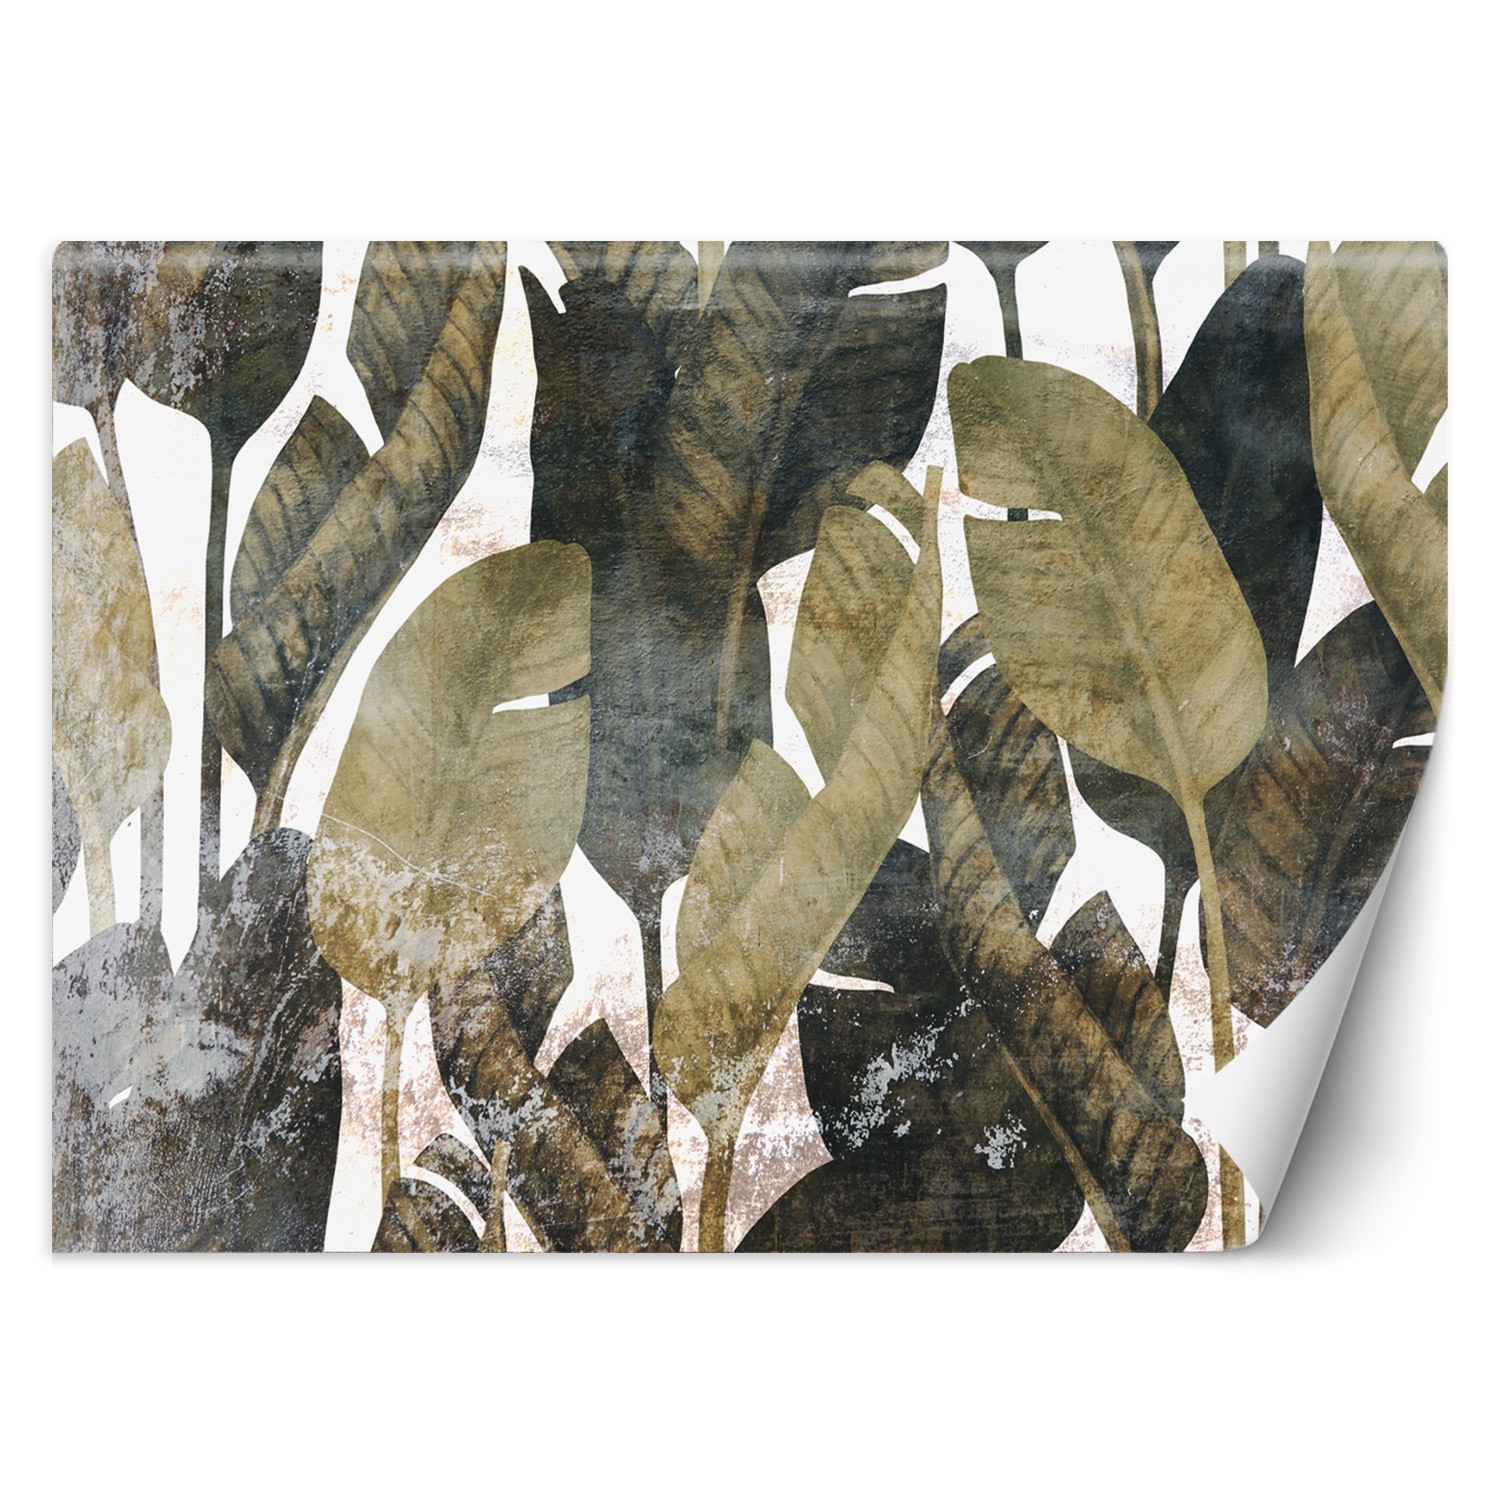 Trend24 – Behang – Bananenblaadjes – Behangpapier – Fotobehang 3D – Behang Woonkamer – 200×140 cm – Incl. behanglijm